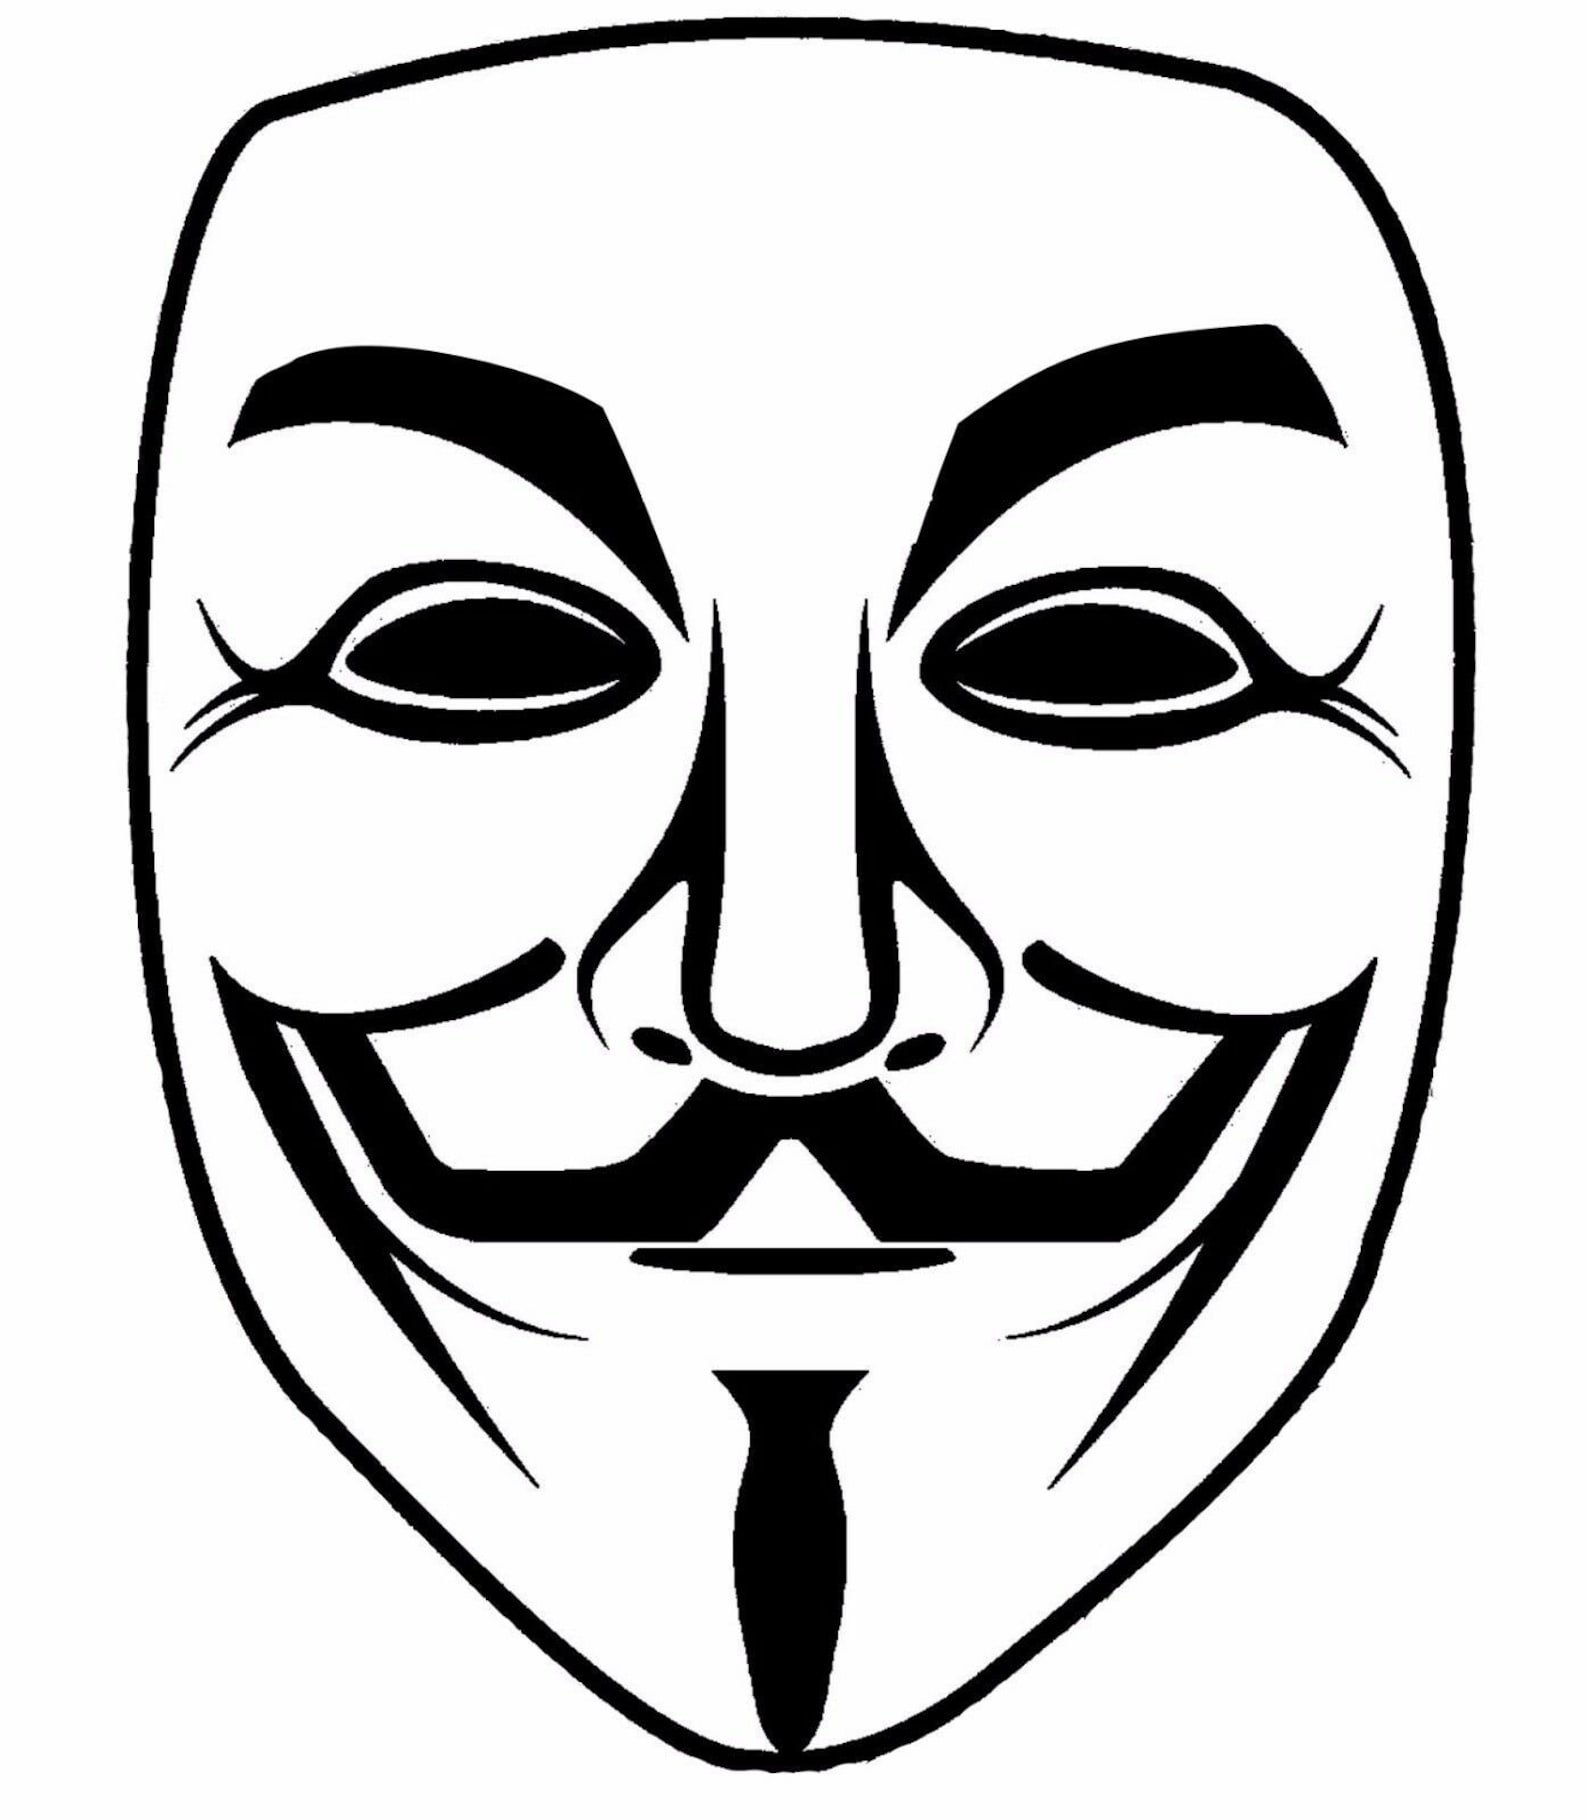 Распечатать картинку маску. Маска Анонимуса 2д. Маска Анонимуса вектор. Маска Анонимуса для срисовки. Черно-белая маска.